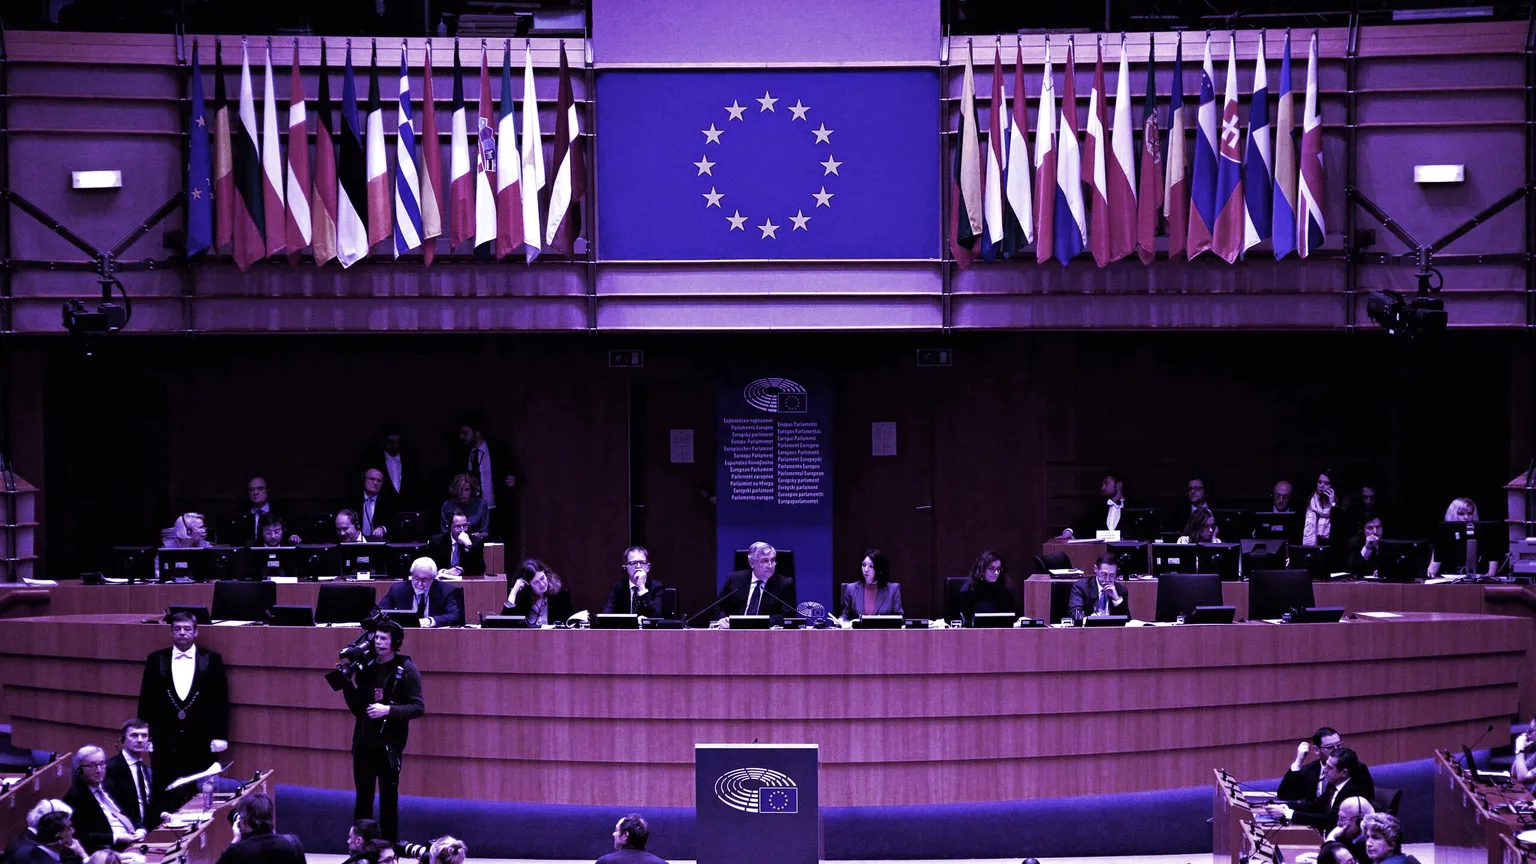 Una reunión del Parlamento Europeo en curso. Imagen: Shutterstock